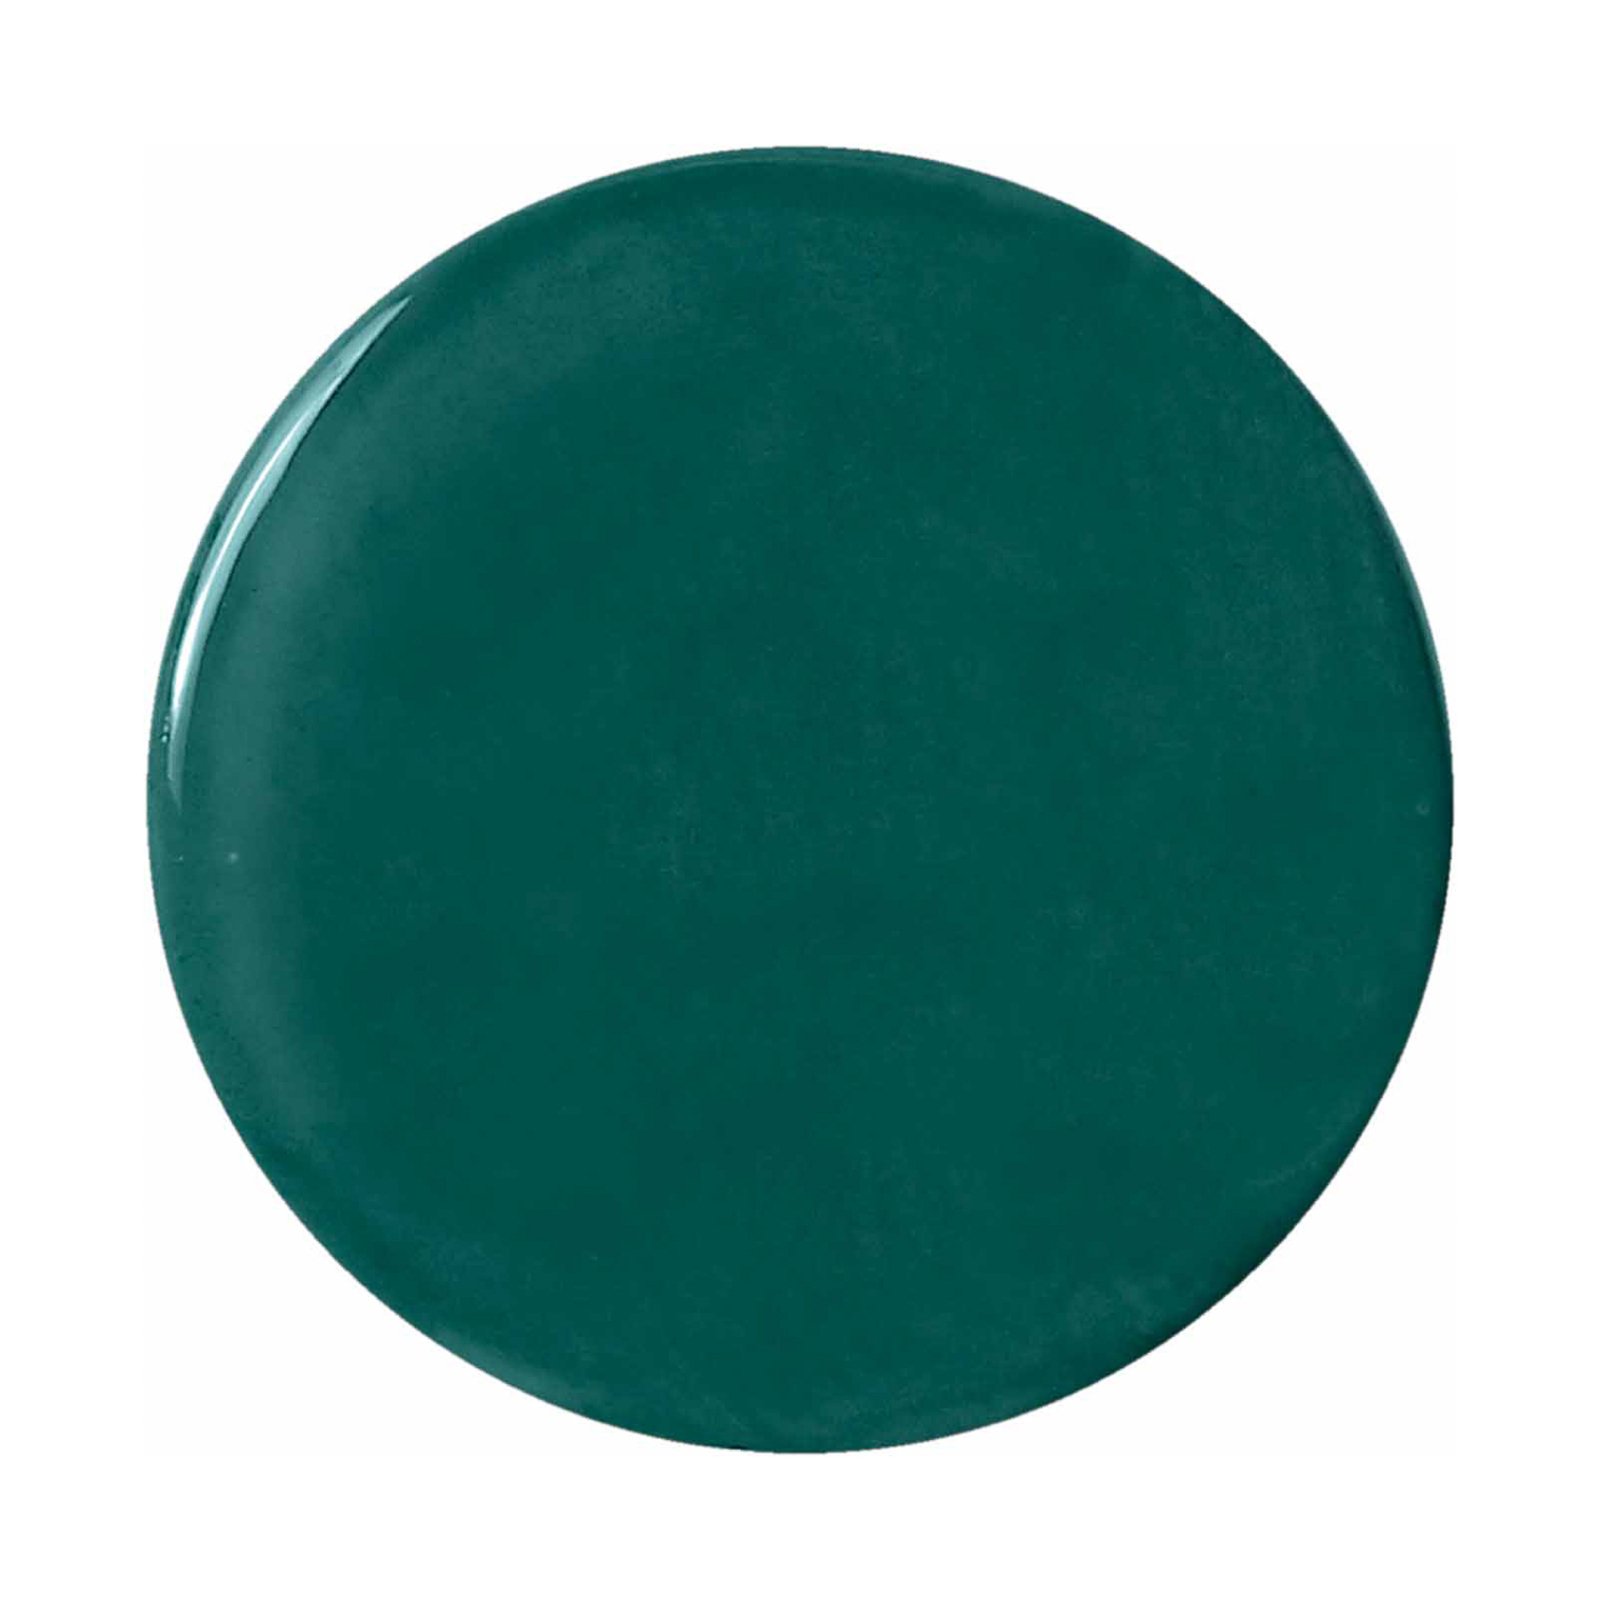 Riippuvalo Lariat keramiikkaa, K 74 cm, vihreä